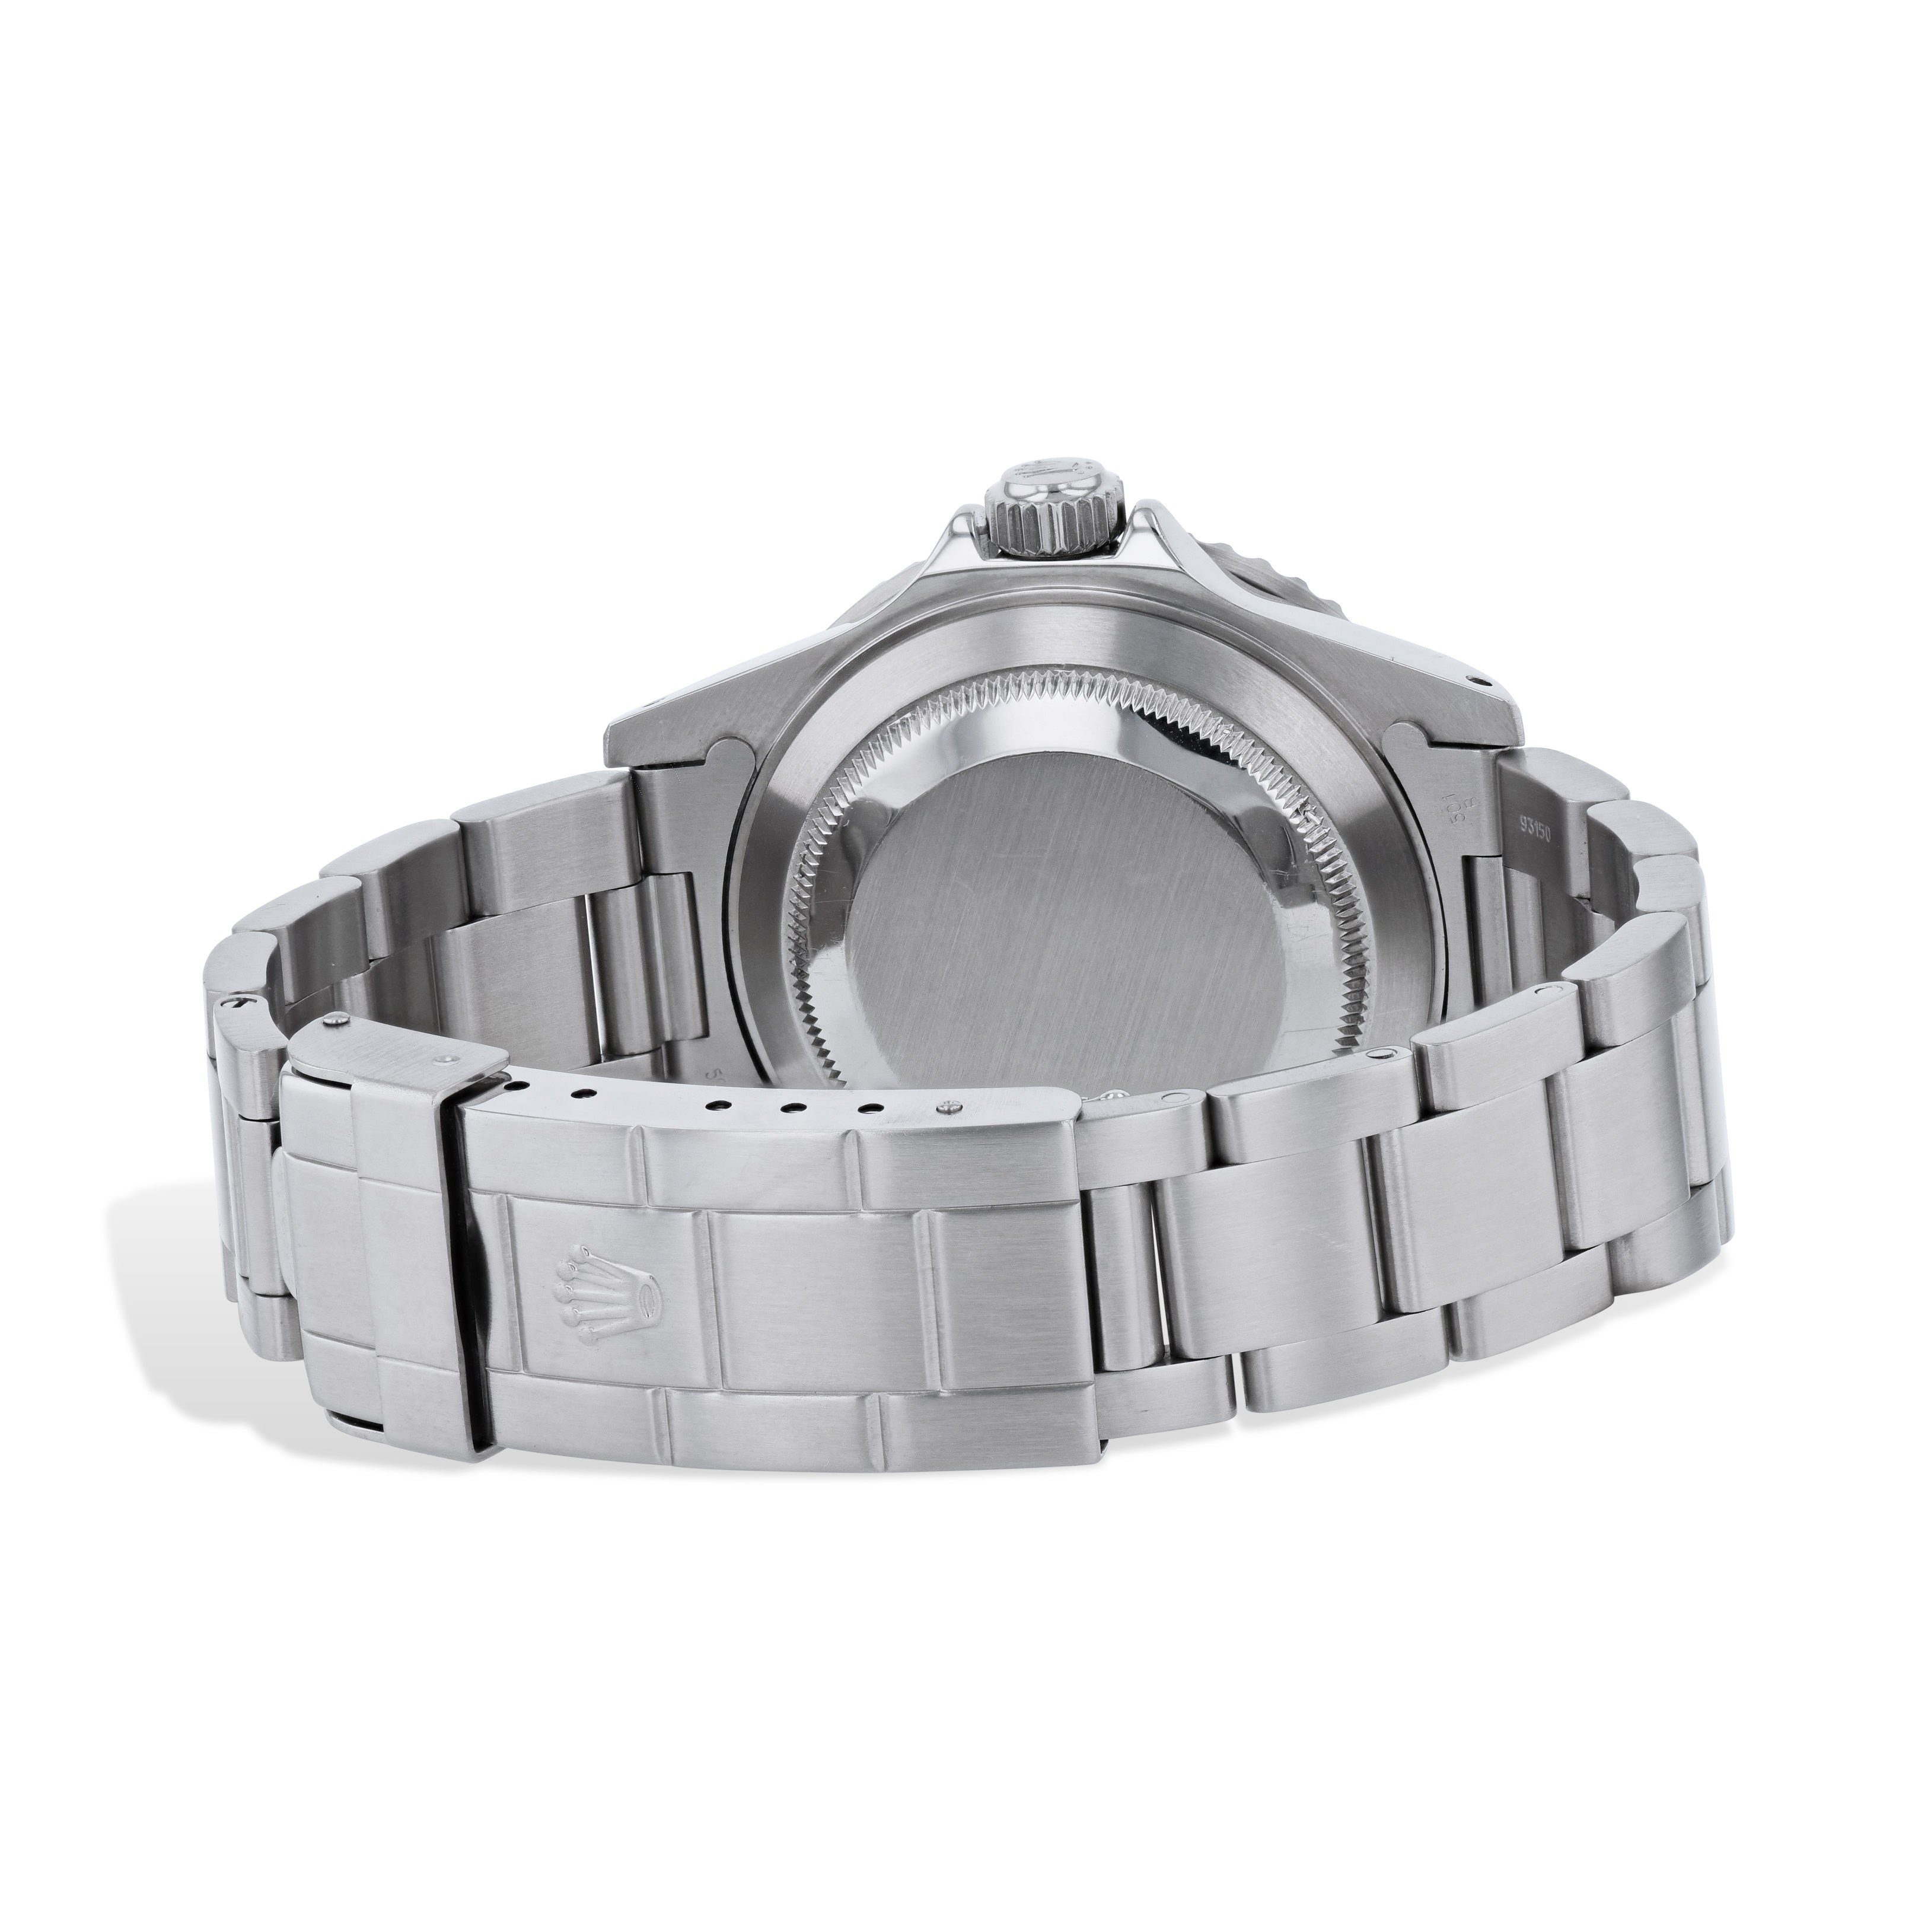 Rolex Submariner Stainless Steel 40mm Estate Watch -16610 Watches Estate &amp; Vintage